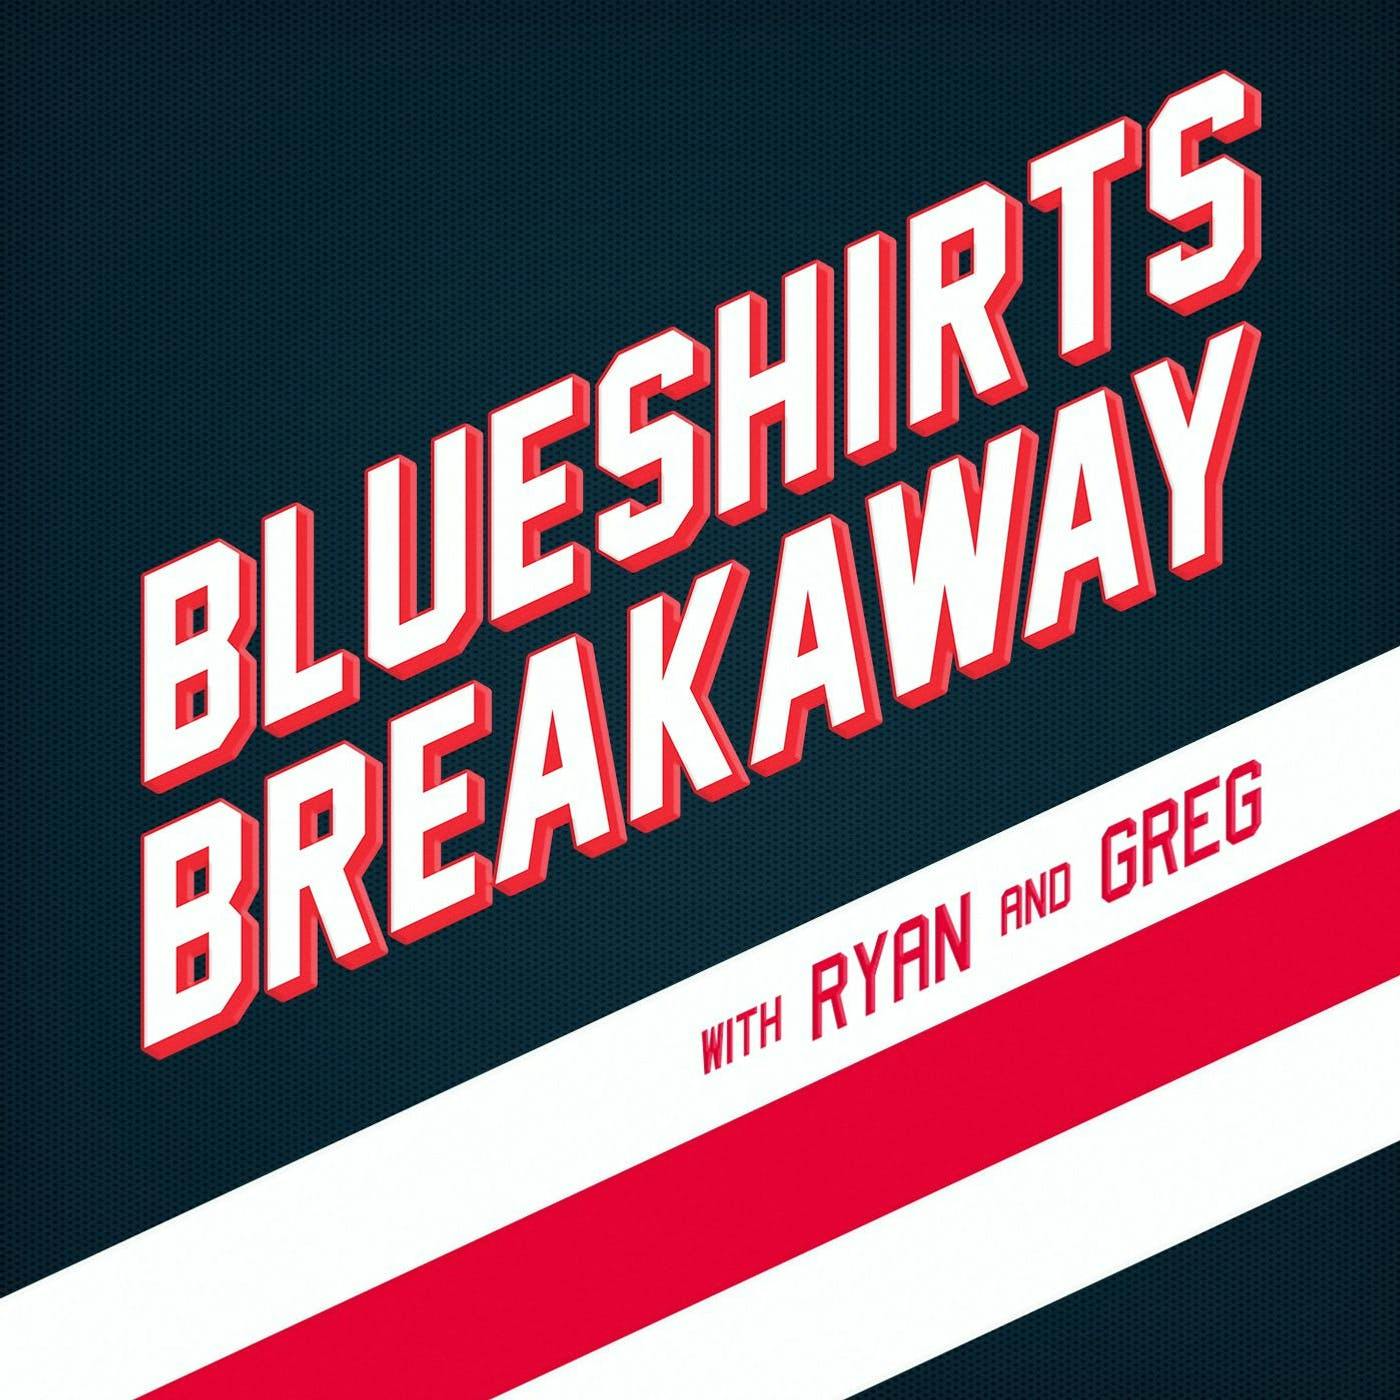 Blueshirts Breakaway 111 - Winter Classic & Travis Yost of TSN